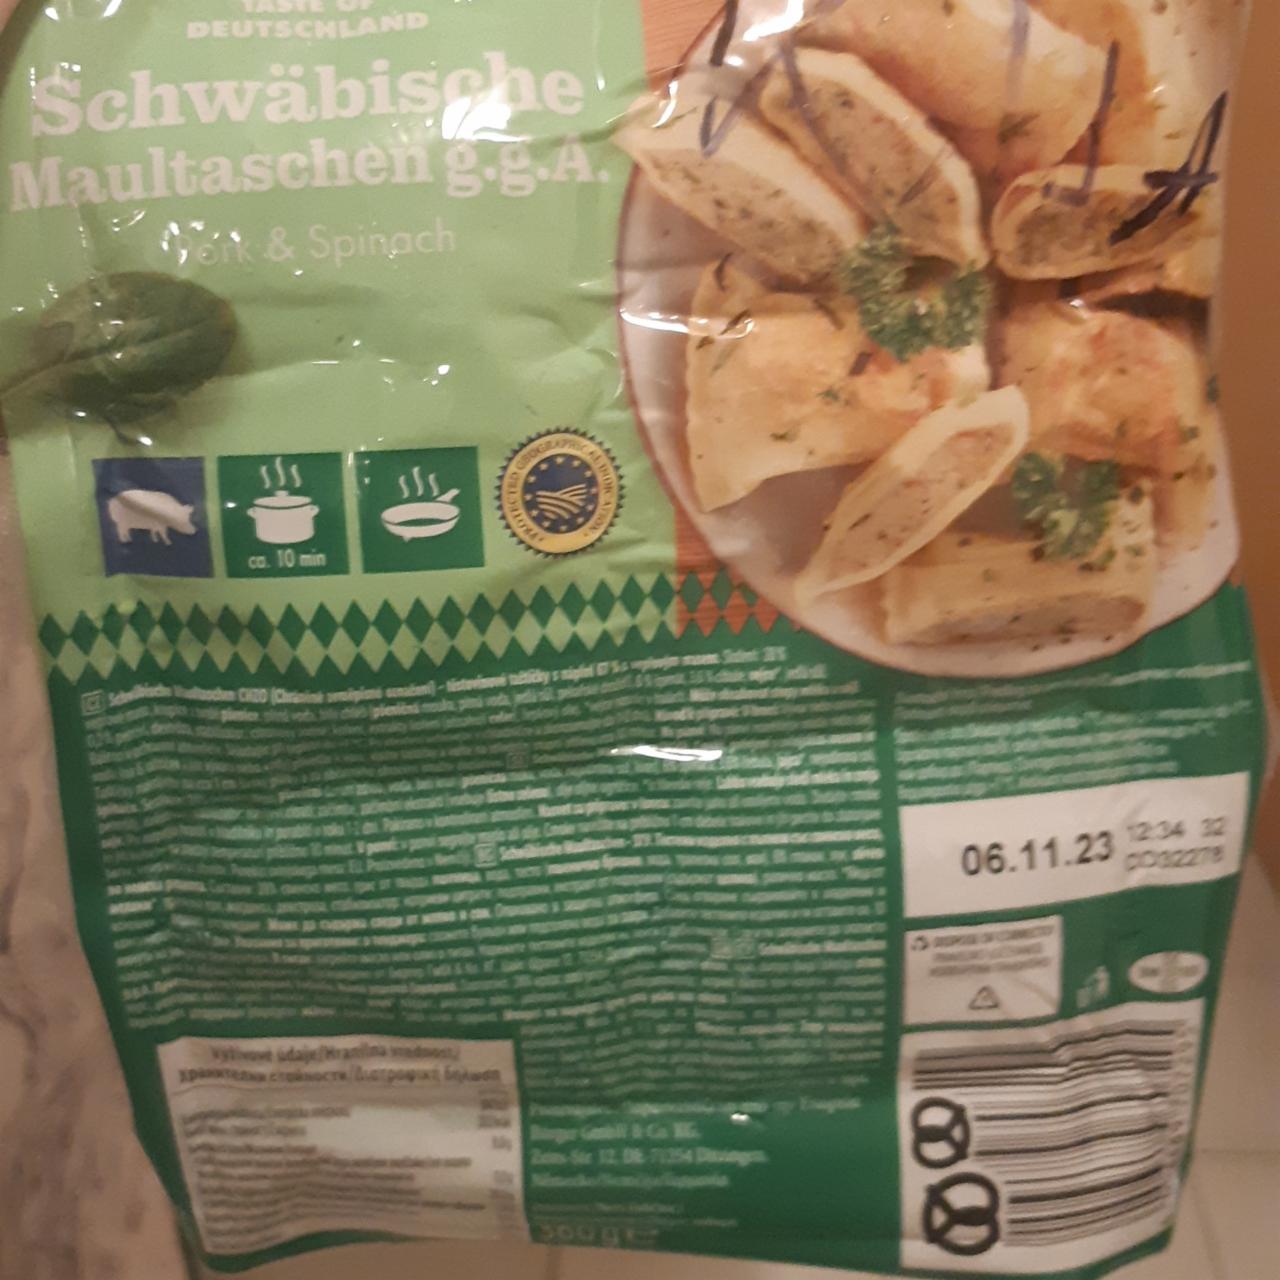 Fotografie - Schwäbische Maultaschen - těstovinové taštičky s náplní 67% s vepřovým masem